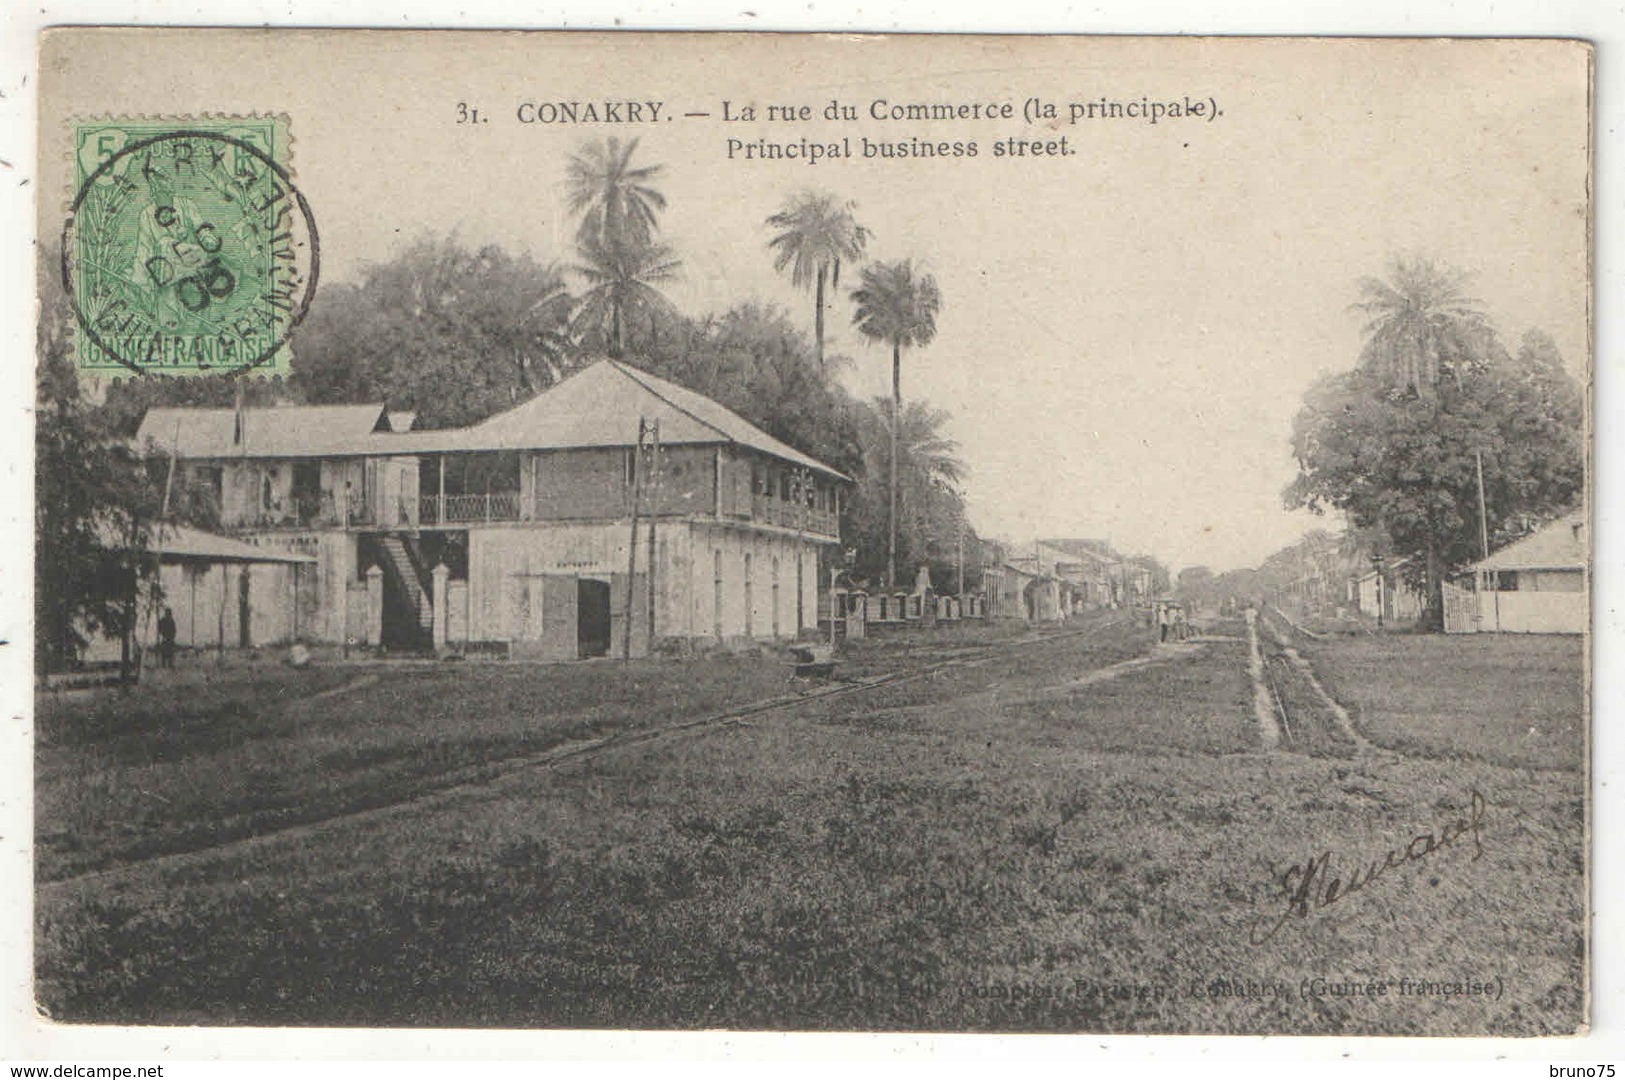 CONAKRY - La Rue Du Commerce (la Principale) - Comptoir Parisien 31 - 1905 - Guinée Française